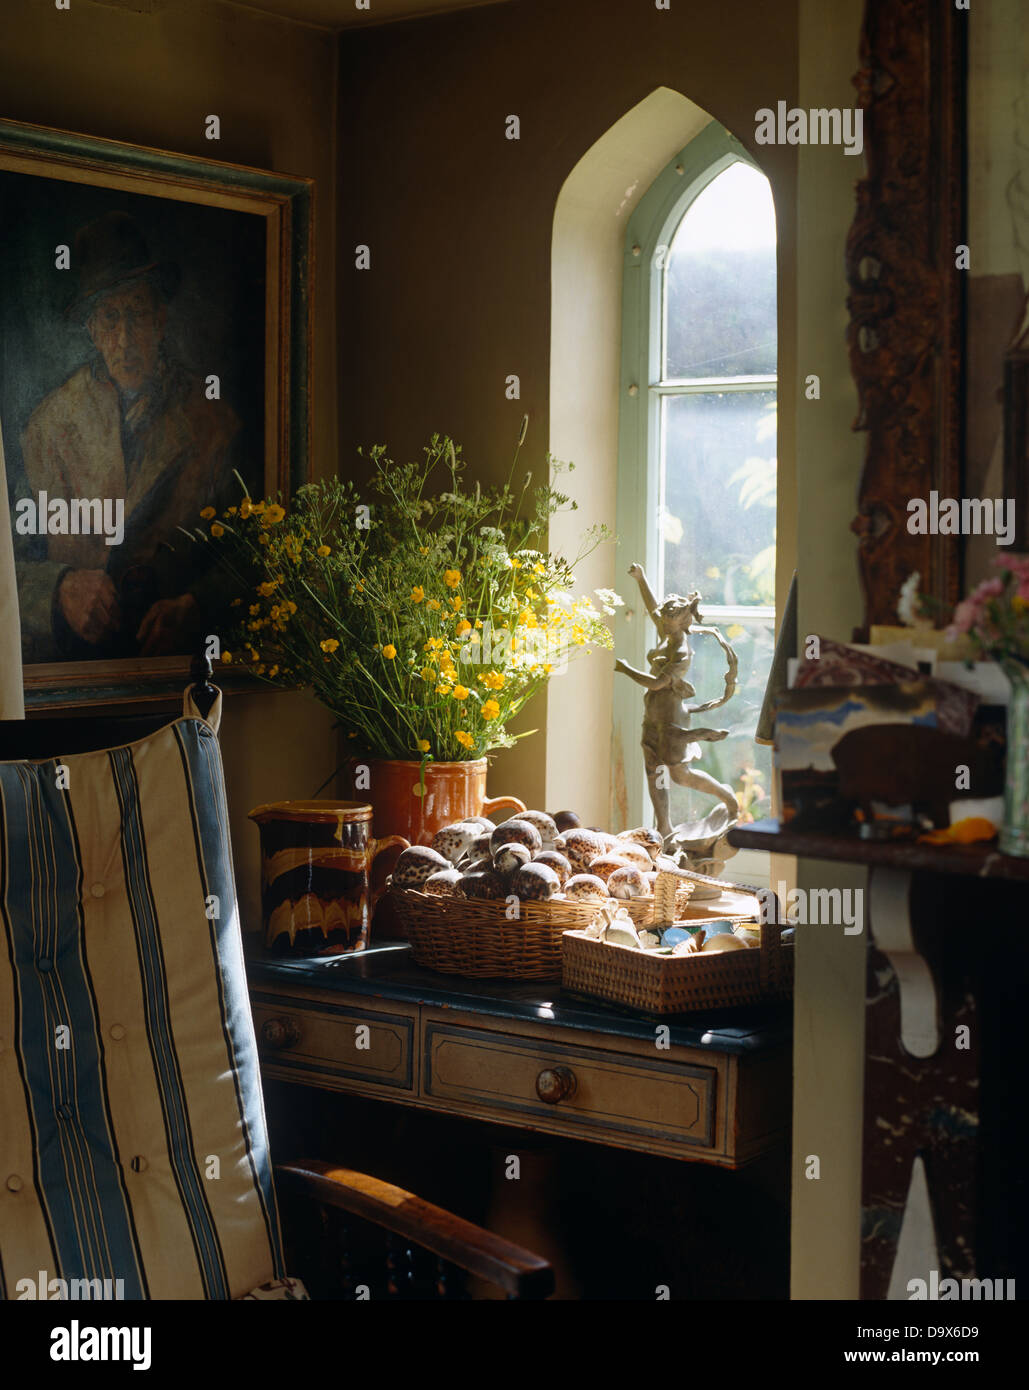 Vase de renoncules et corbeille de fruits à l'ancienne table en bois en dessous de la peinture à l'huile et fenêtre cintrée en cuisine cottage Banque D'Images